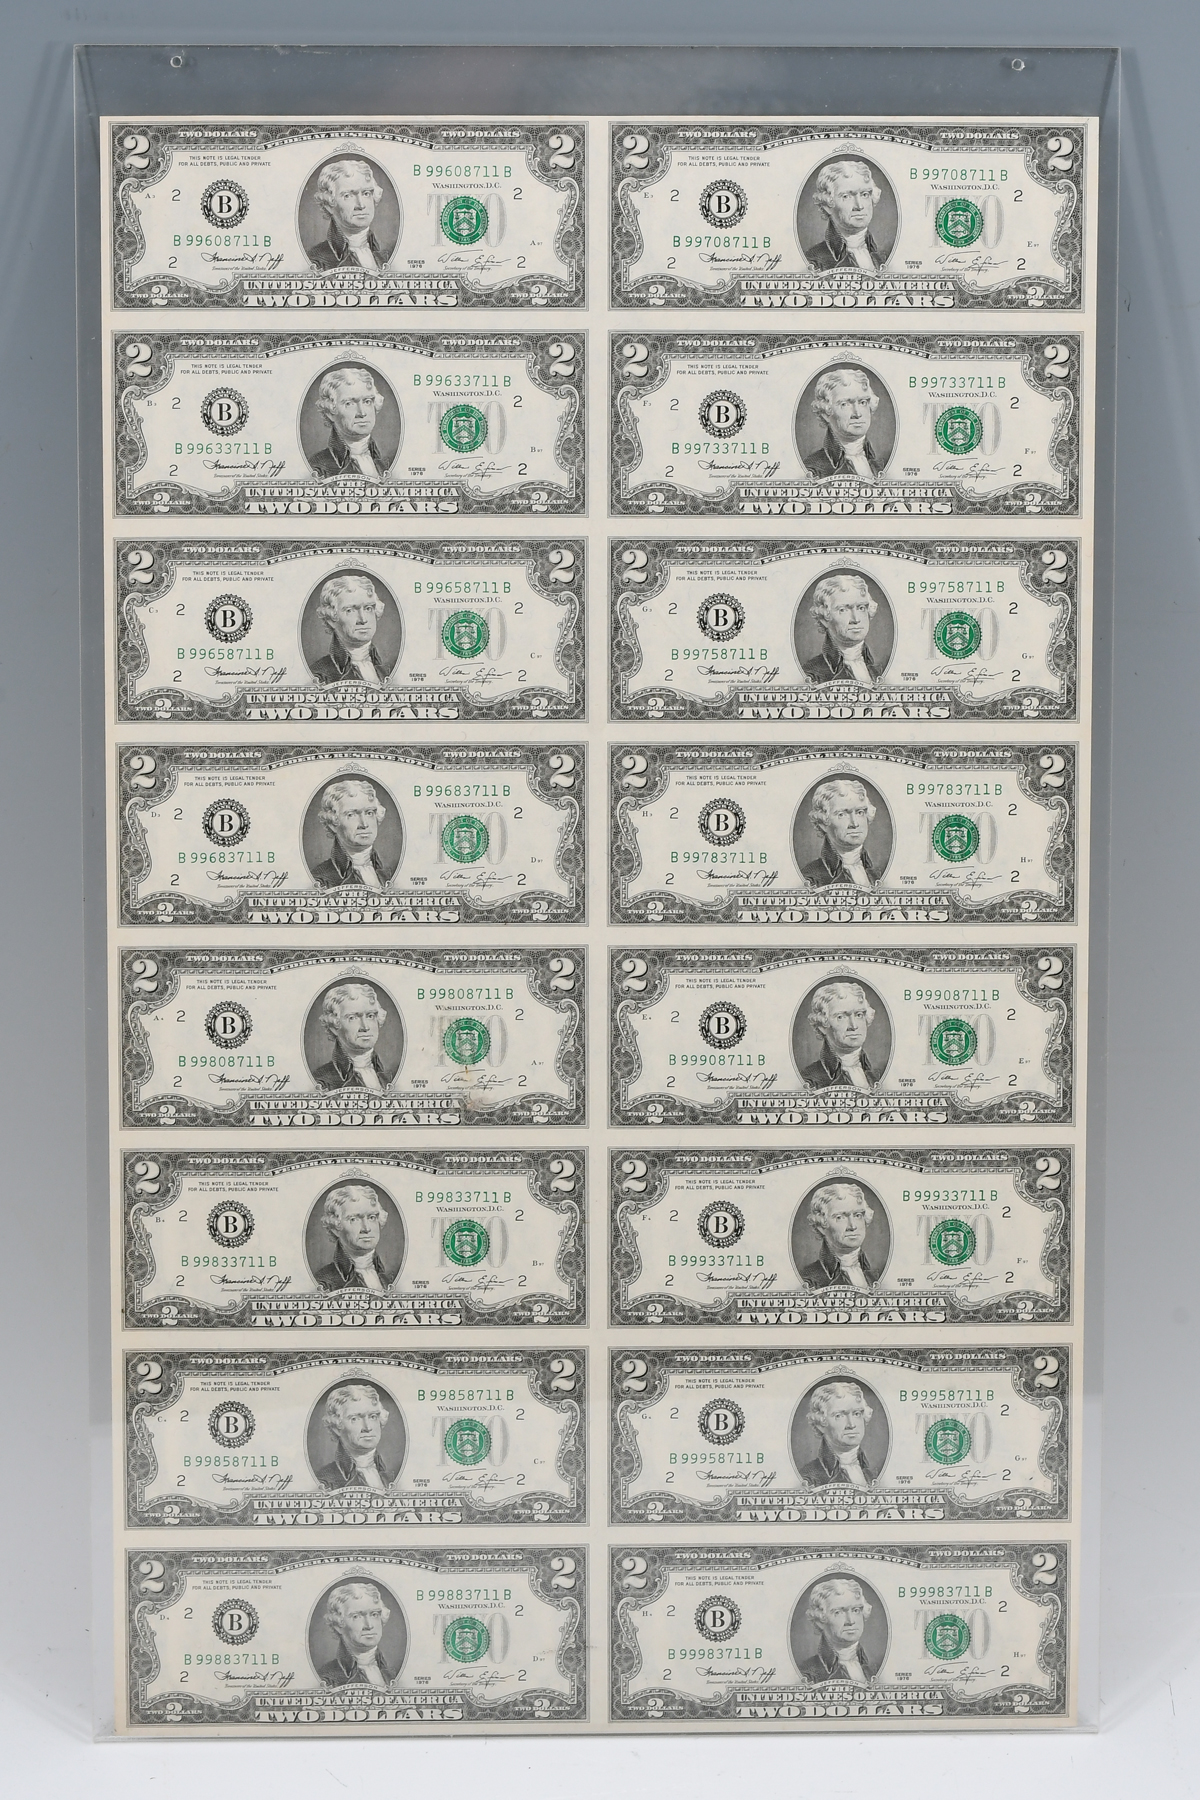 UNCUT SHEET OF $2 BILLS: A sheet